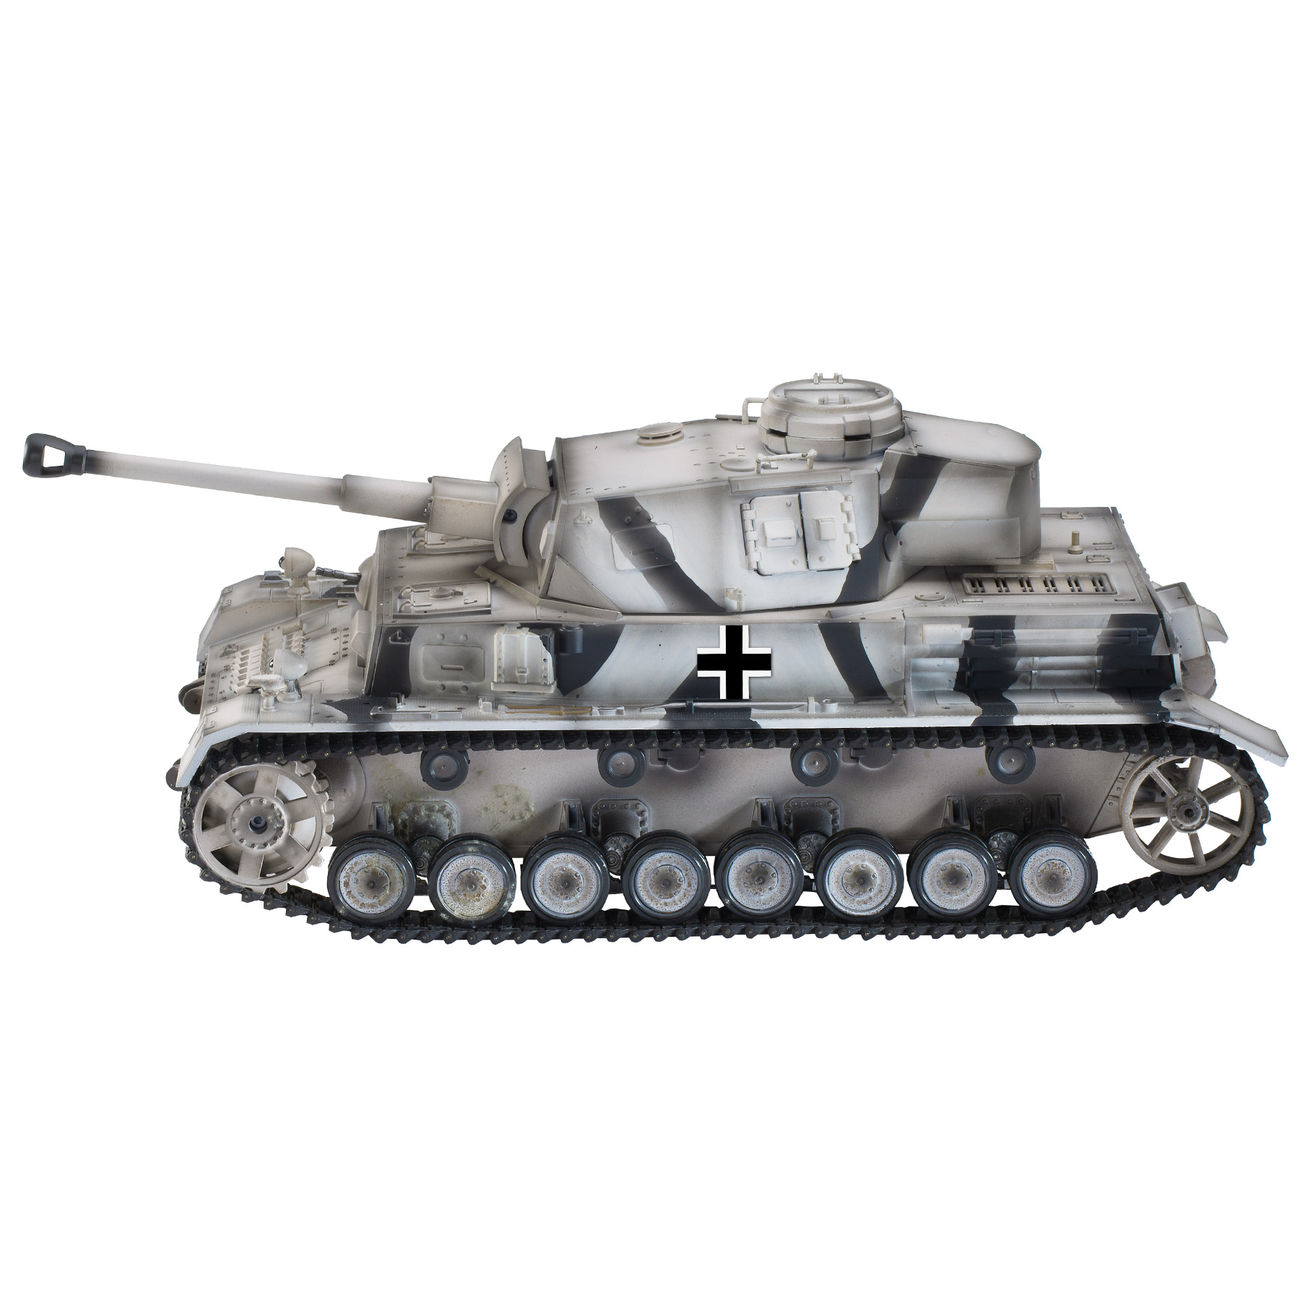 Torro RC Panzerkampfwagen IV Ausf. F2 Sd. Kfz. 161/1 1:16 RTR schussfähig Bild 1